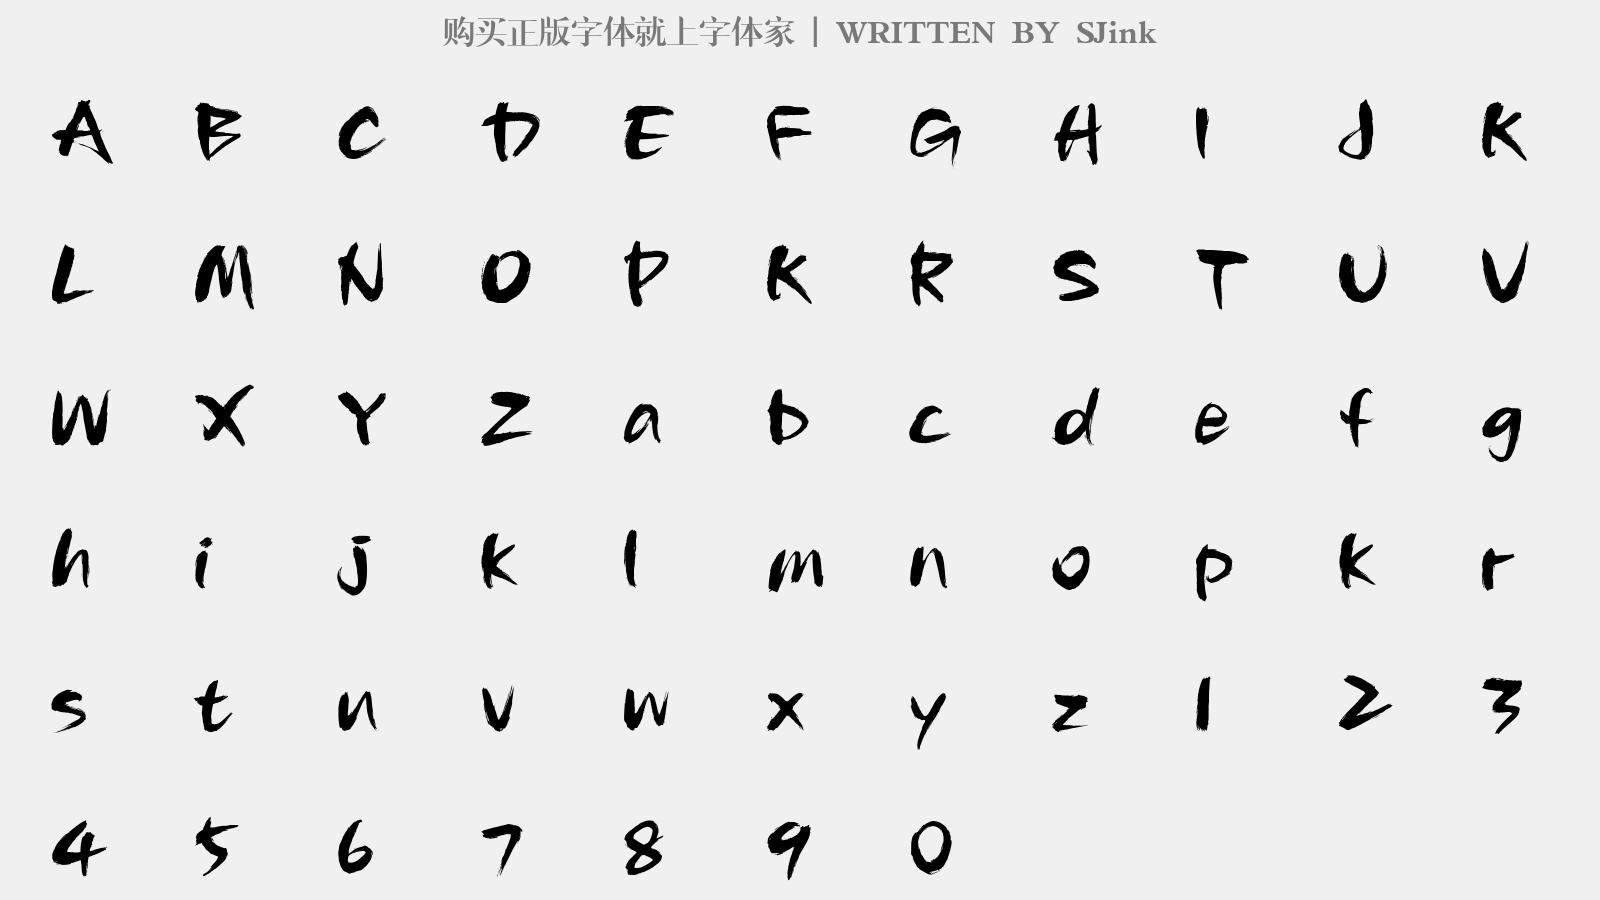 SJink - 大写字母/小写字母/数字